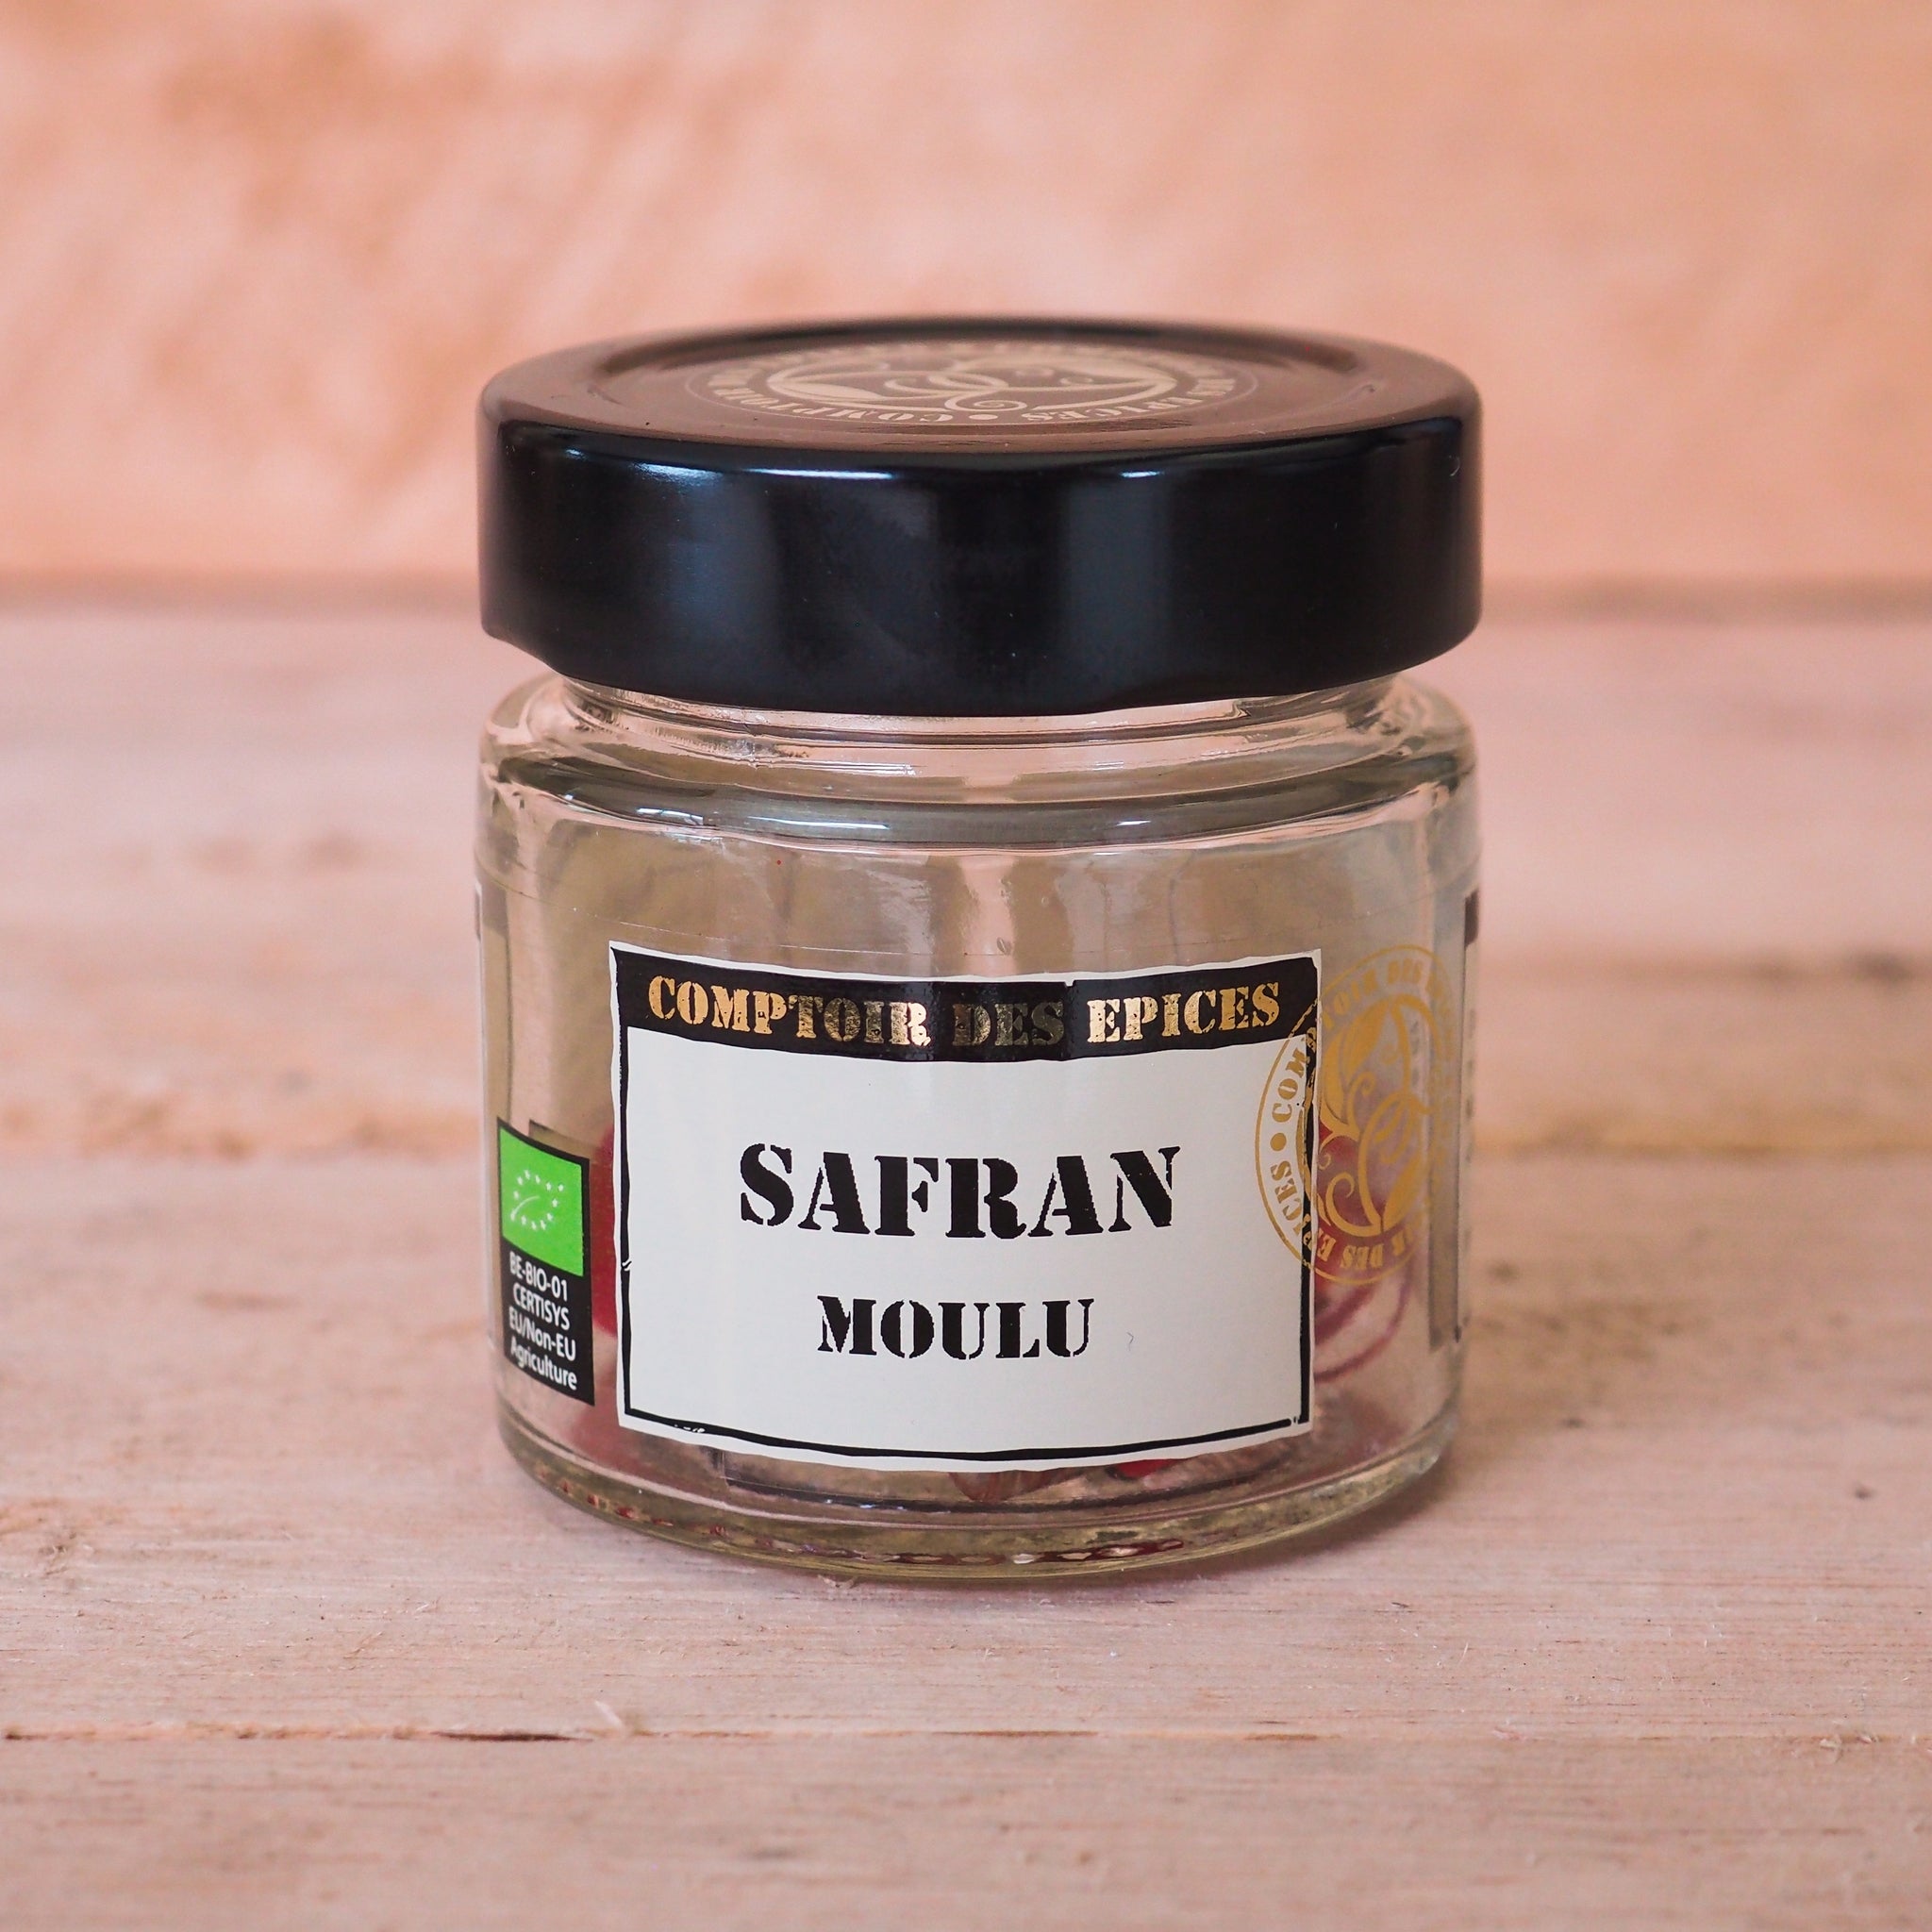 Safran Bio en poudre